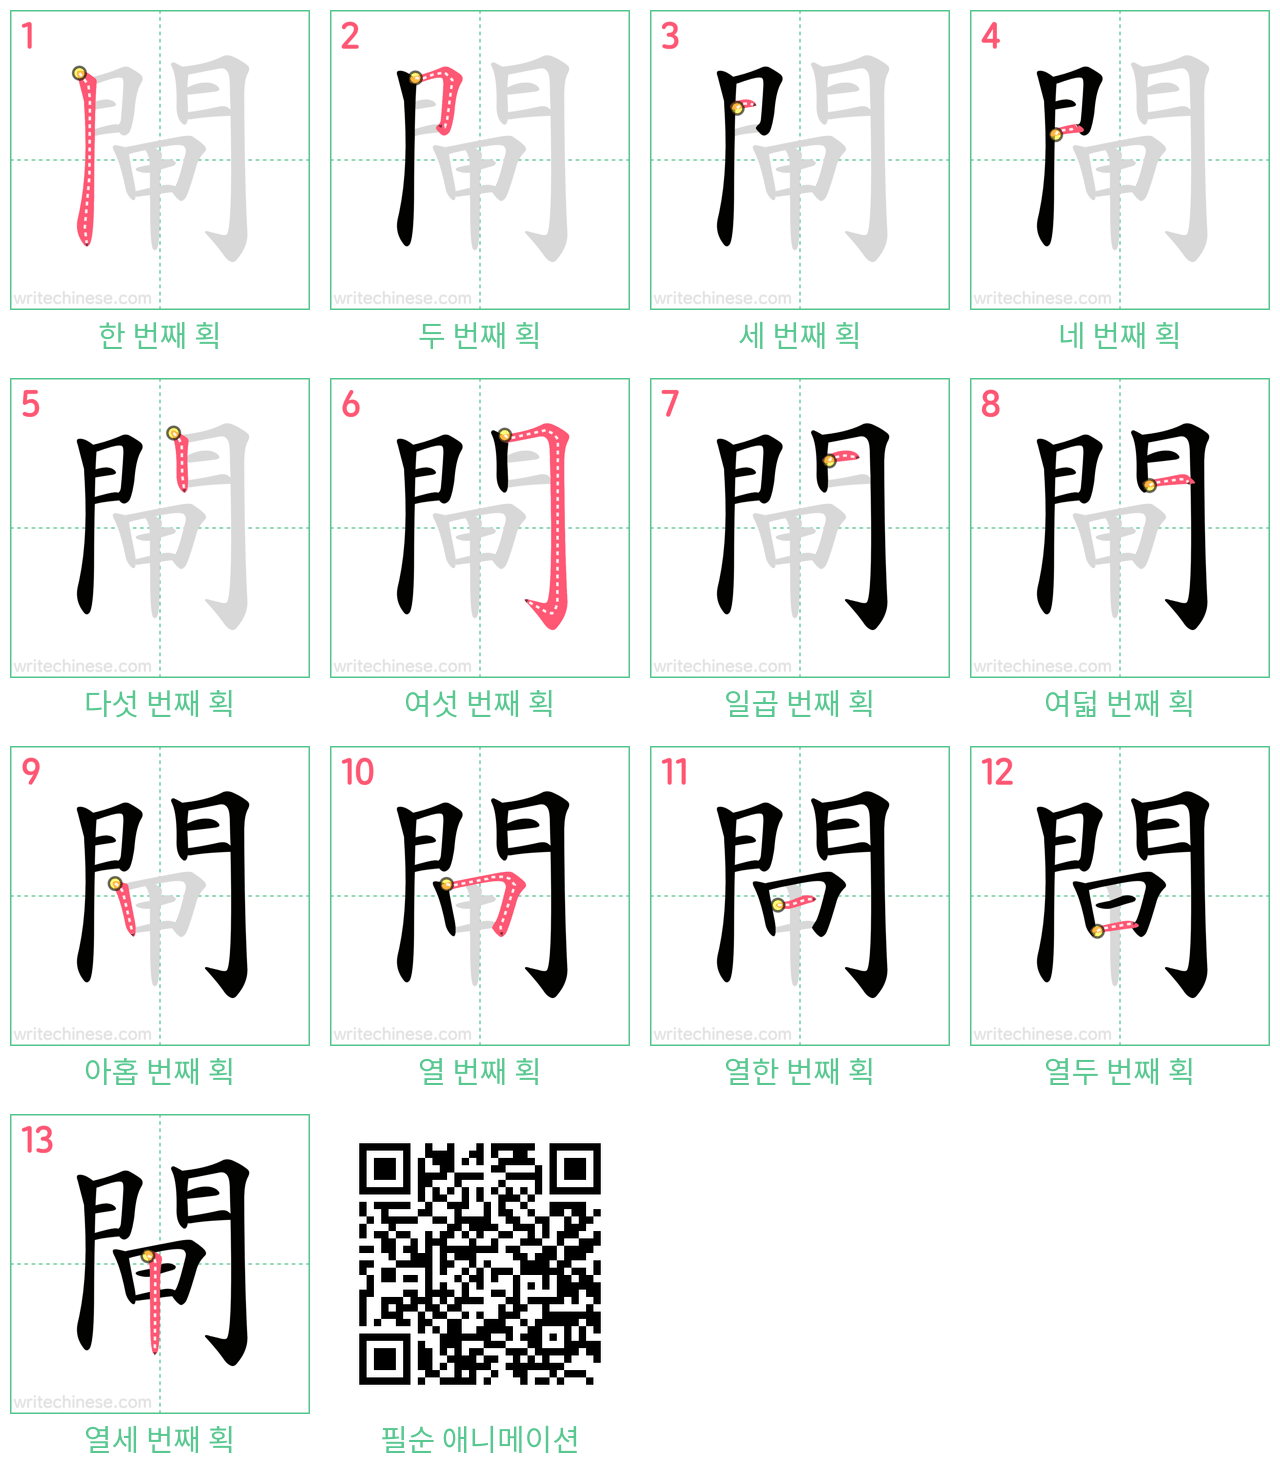 閘 step-by-step stroke order diagrams